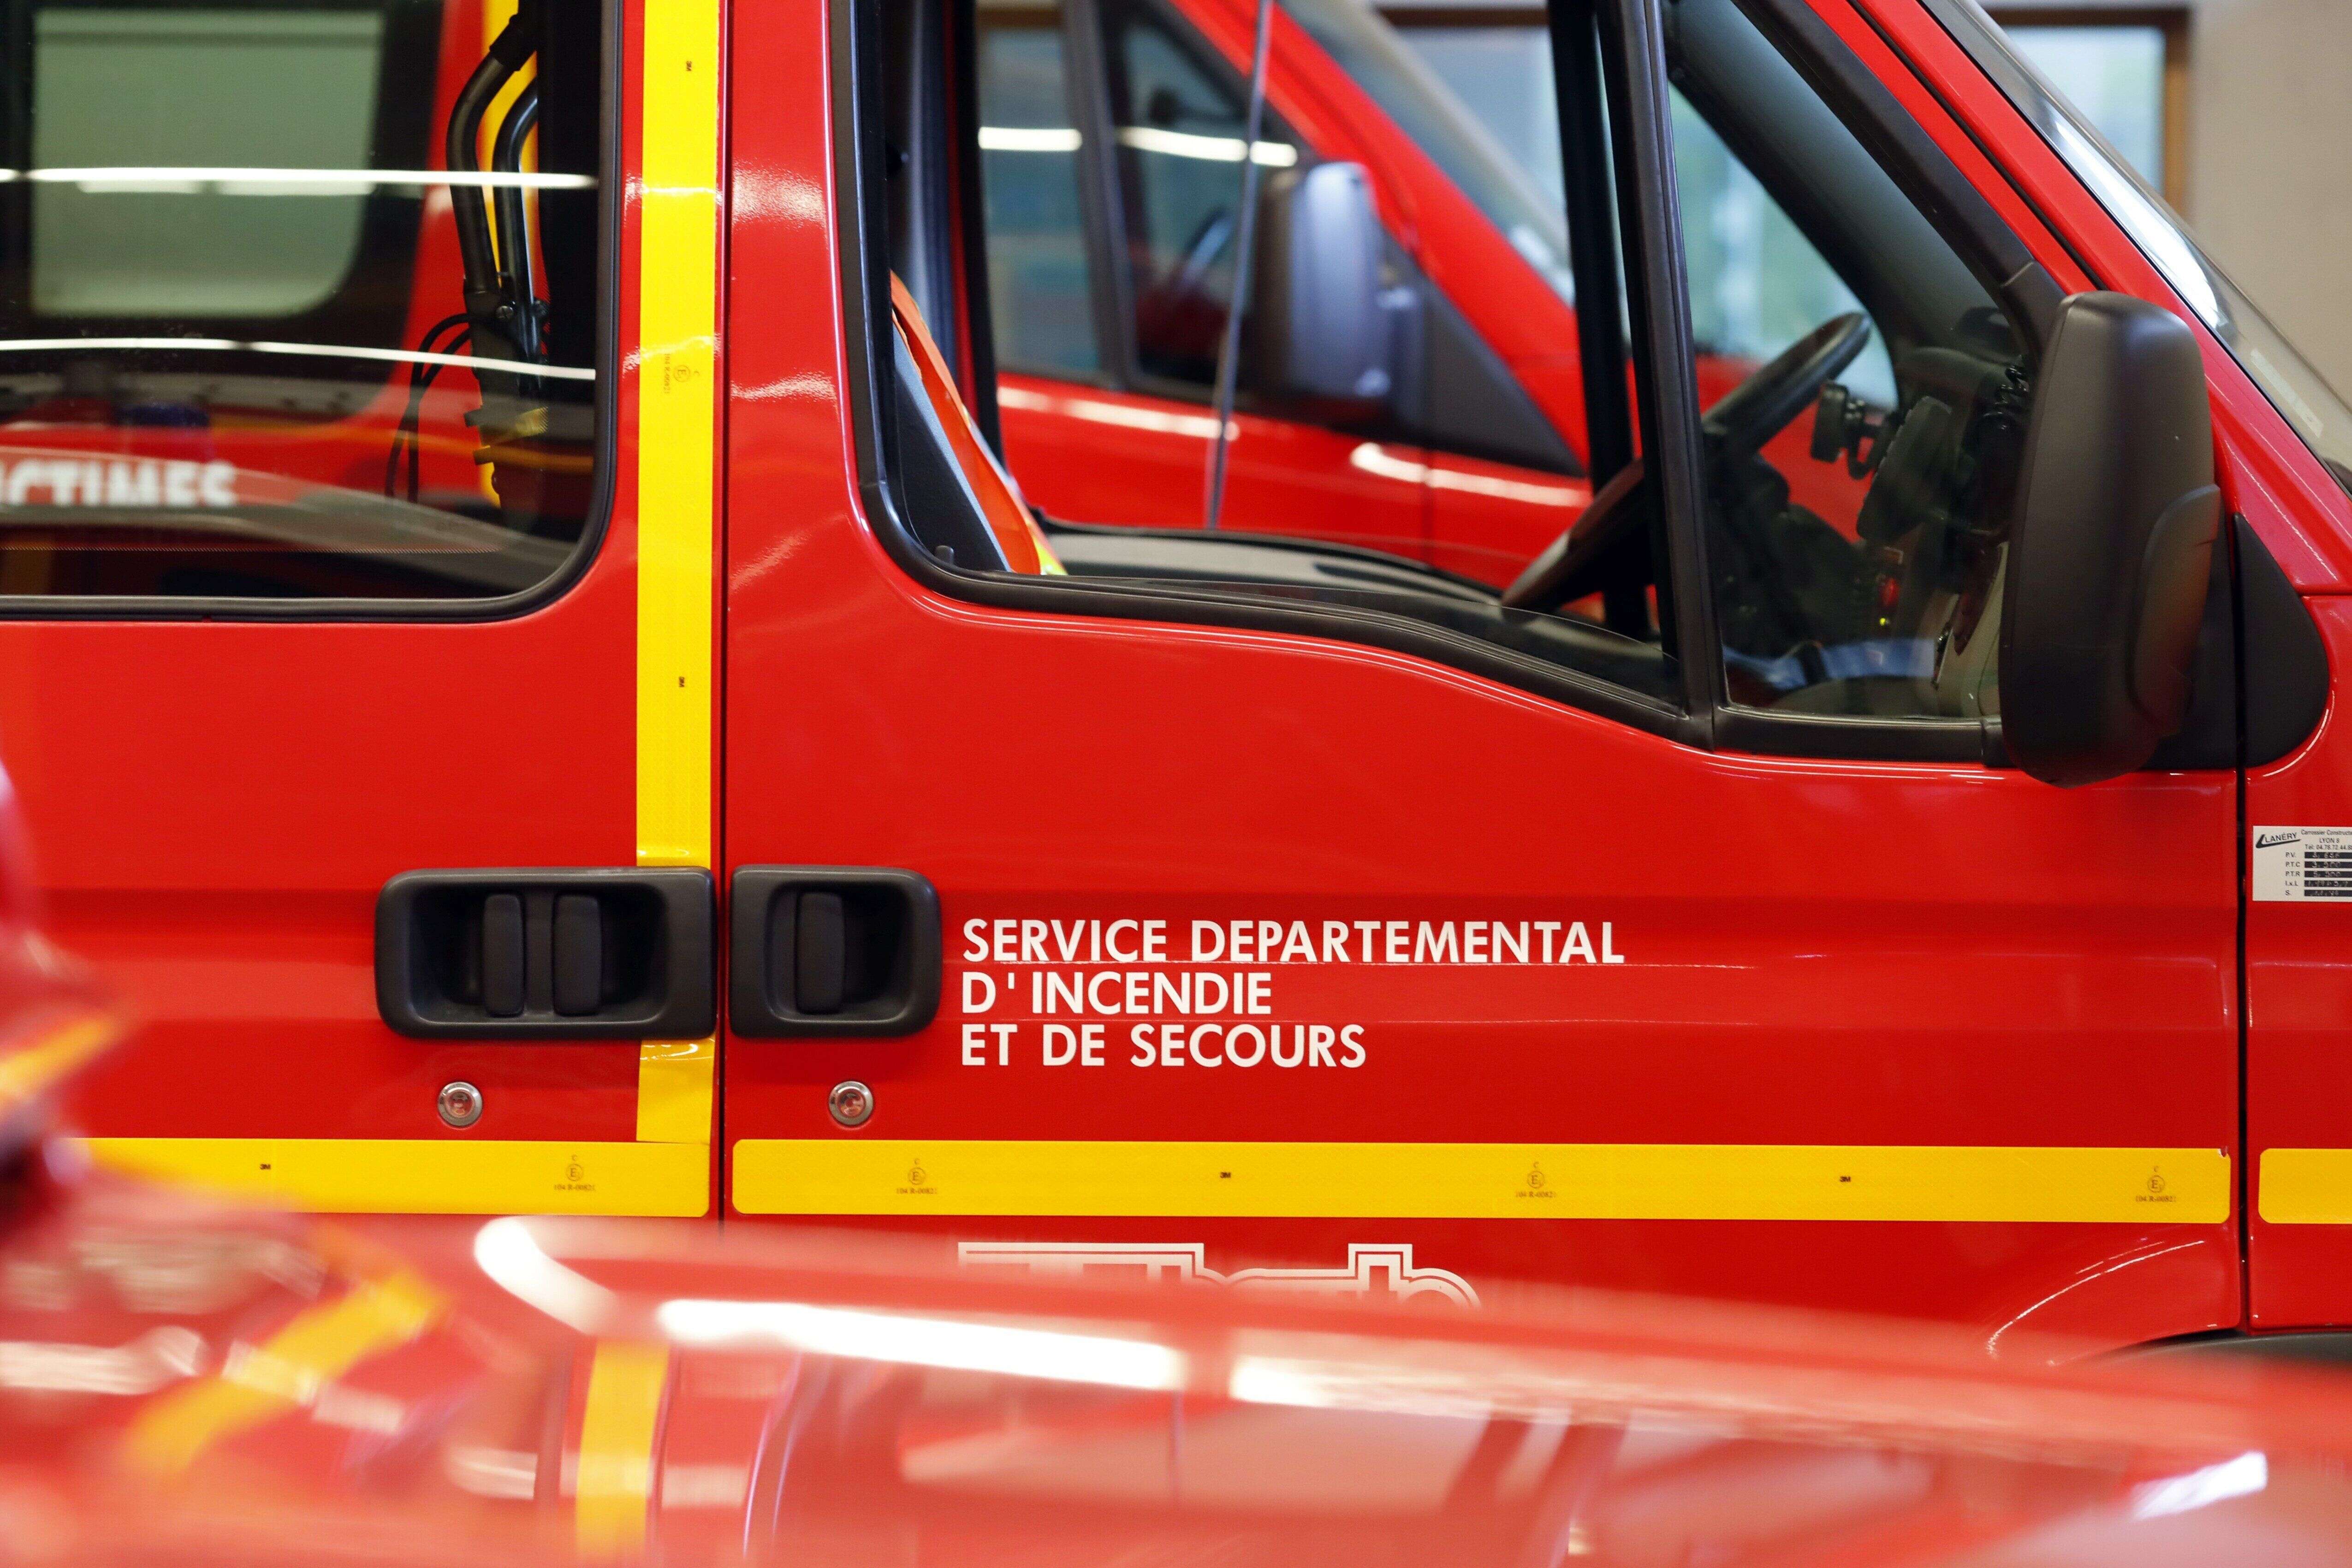 Risques toxiques après un incendie dans une usine en Ariège, les riverains confinés (Un camion de pompiers image d'illustration)